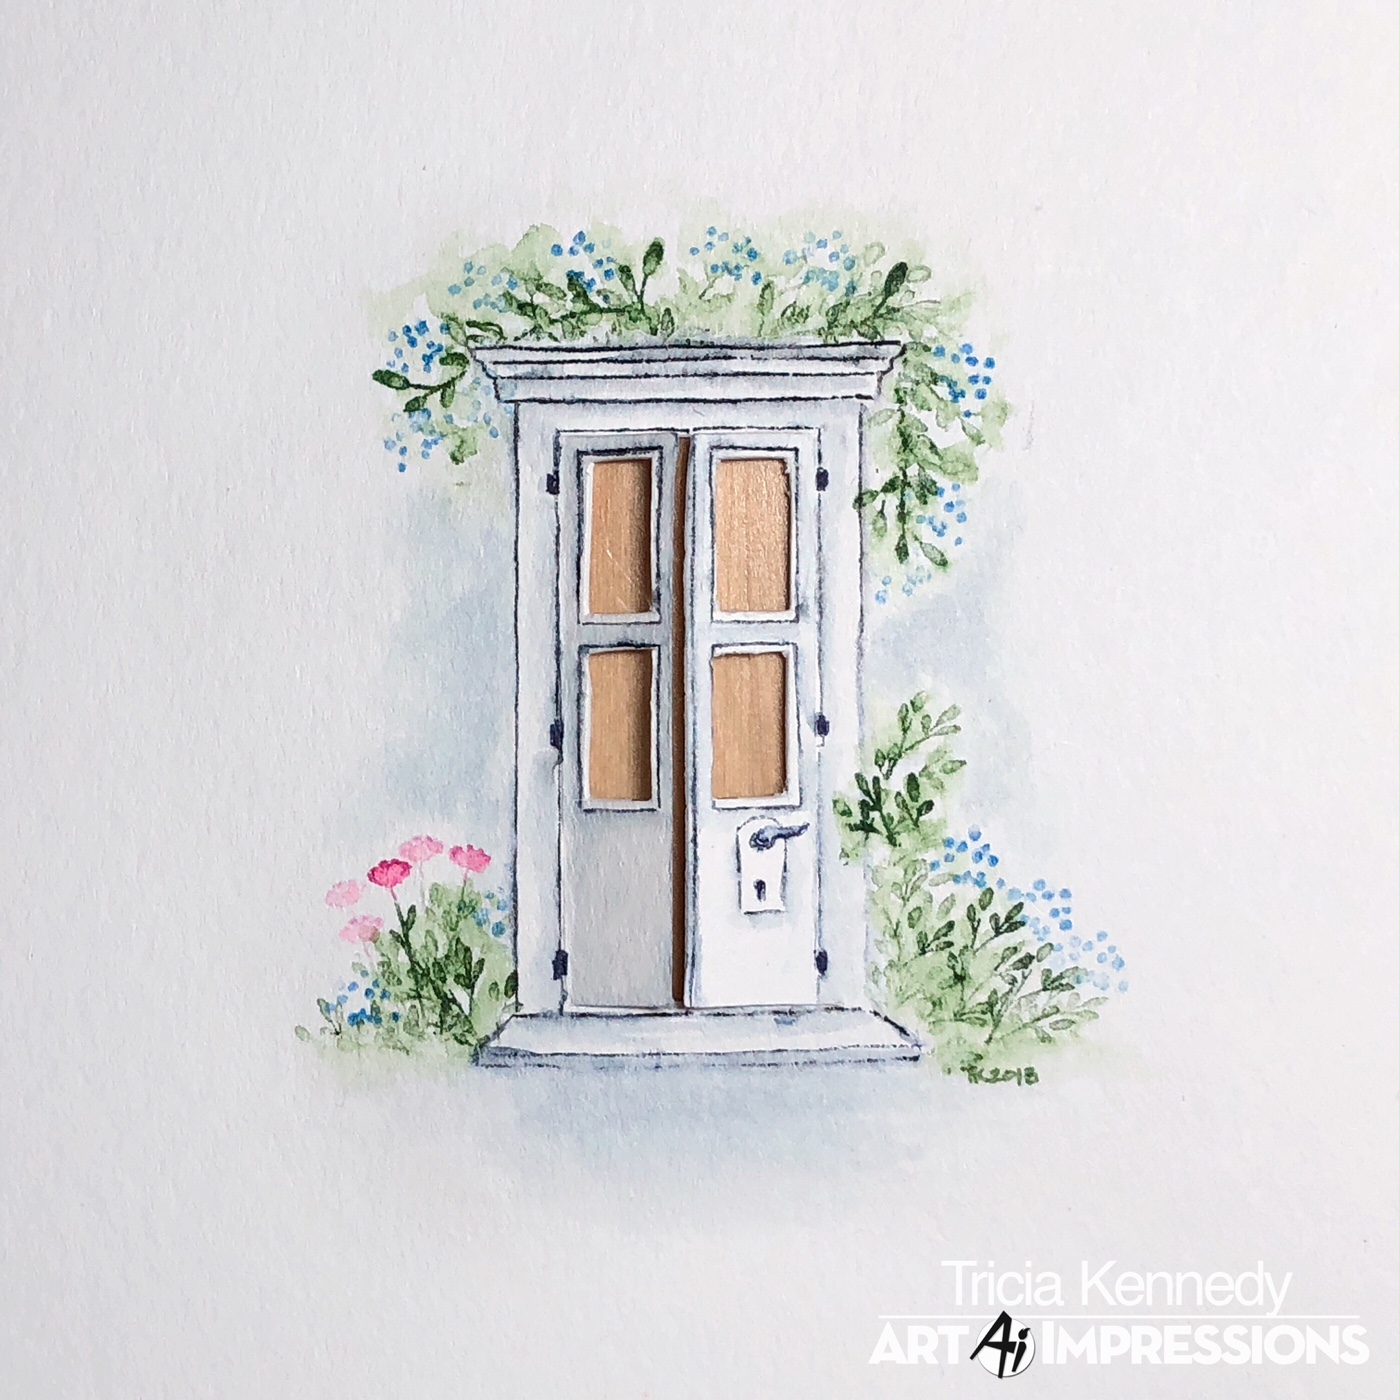 Art Impressions Blog: Watercolor Weekend Roundup - Doors Of Possibilities!